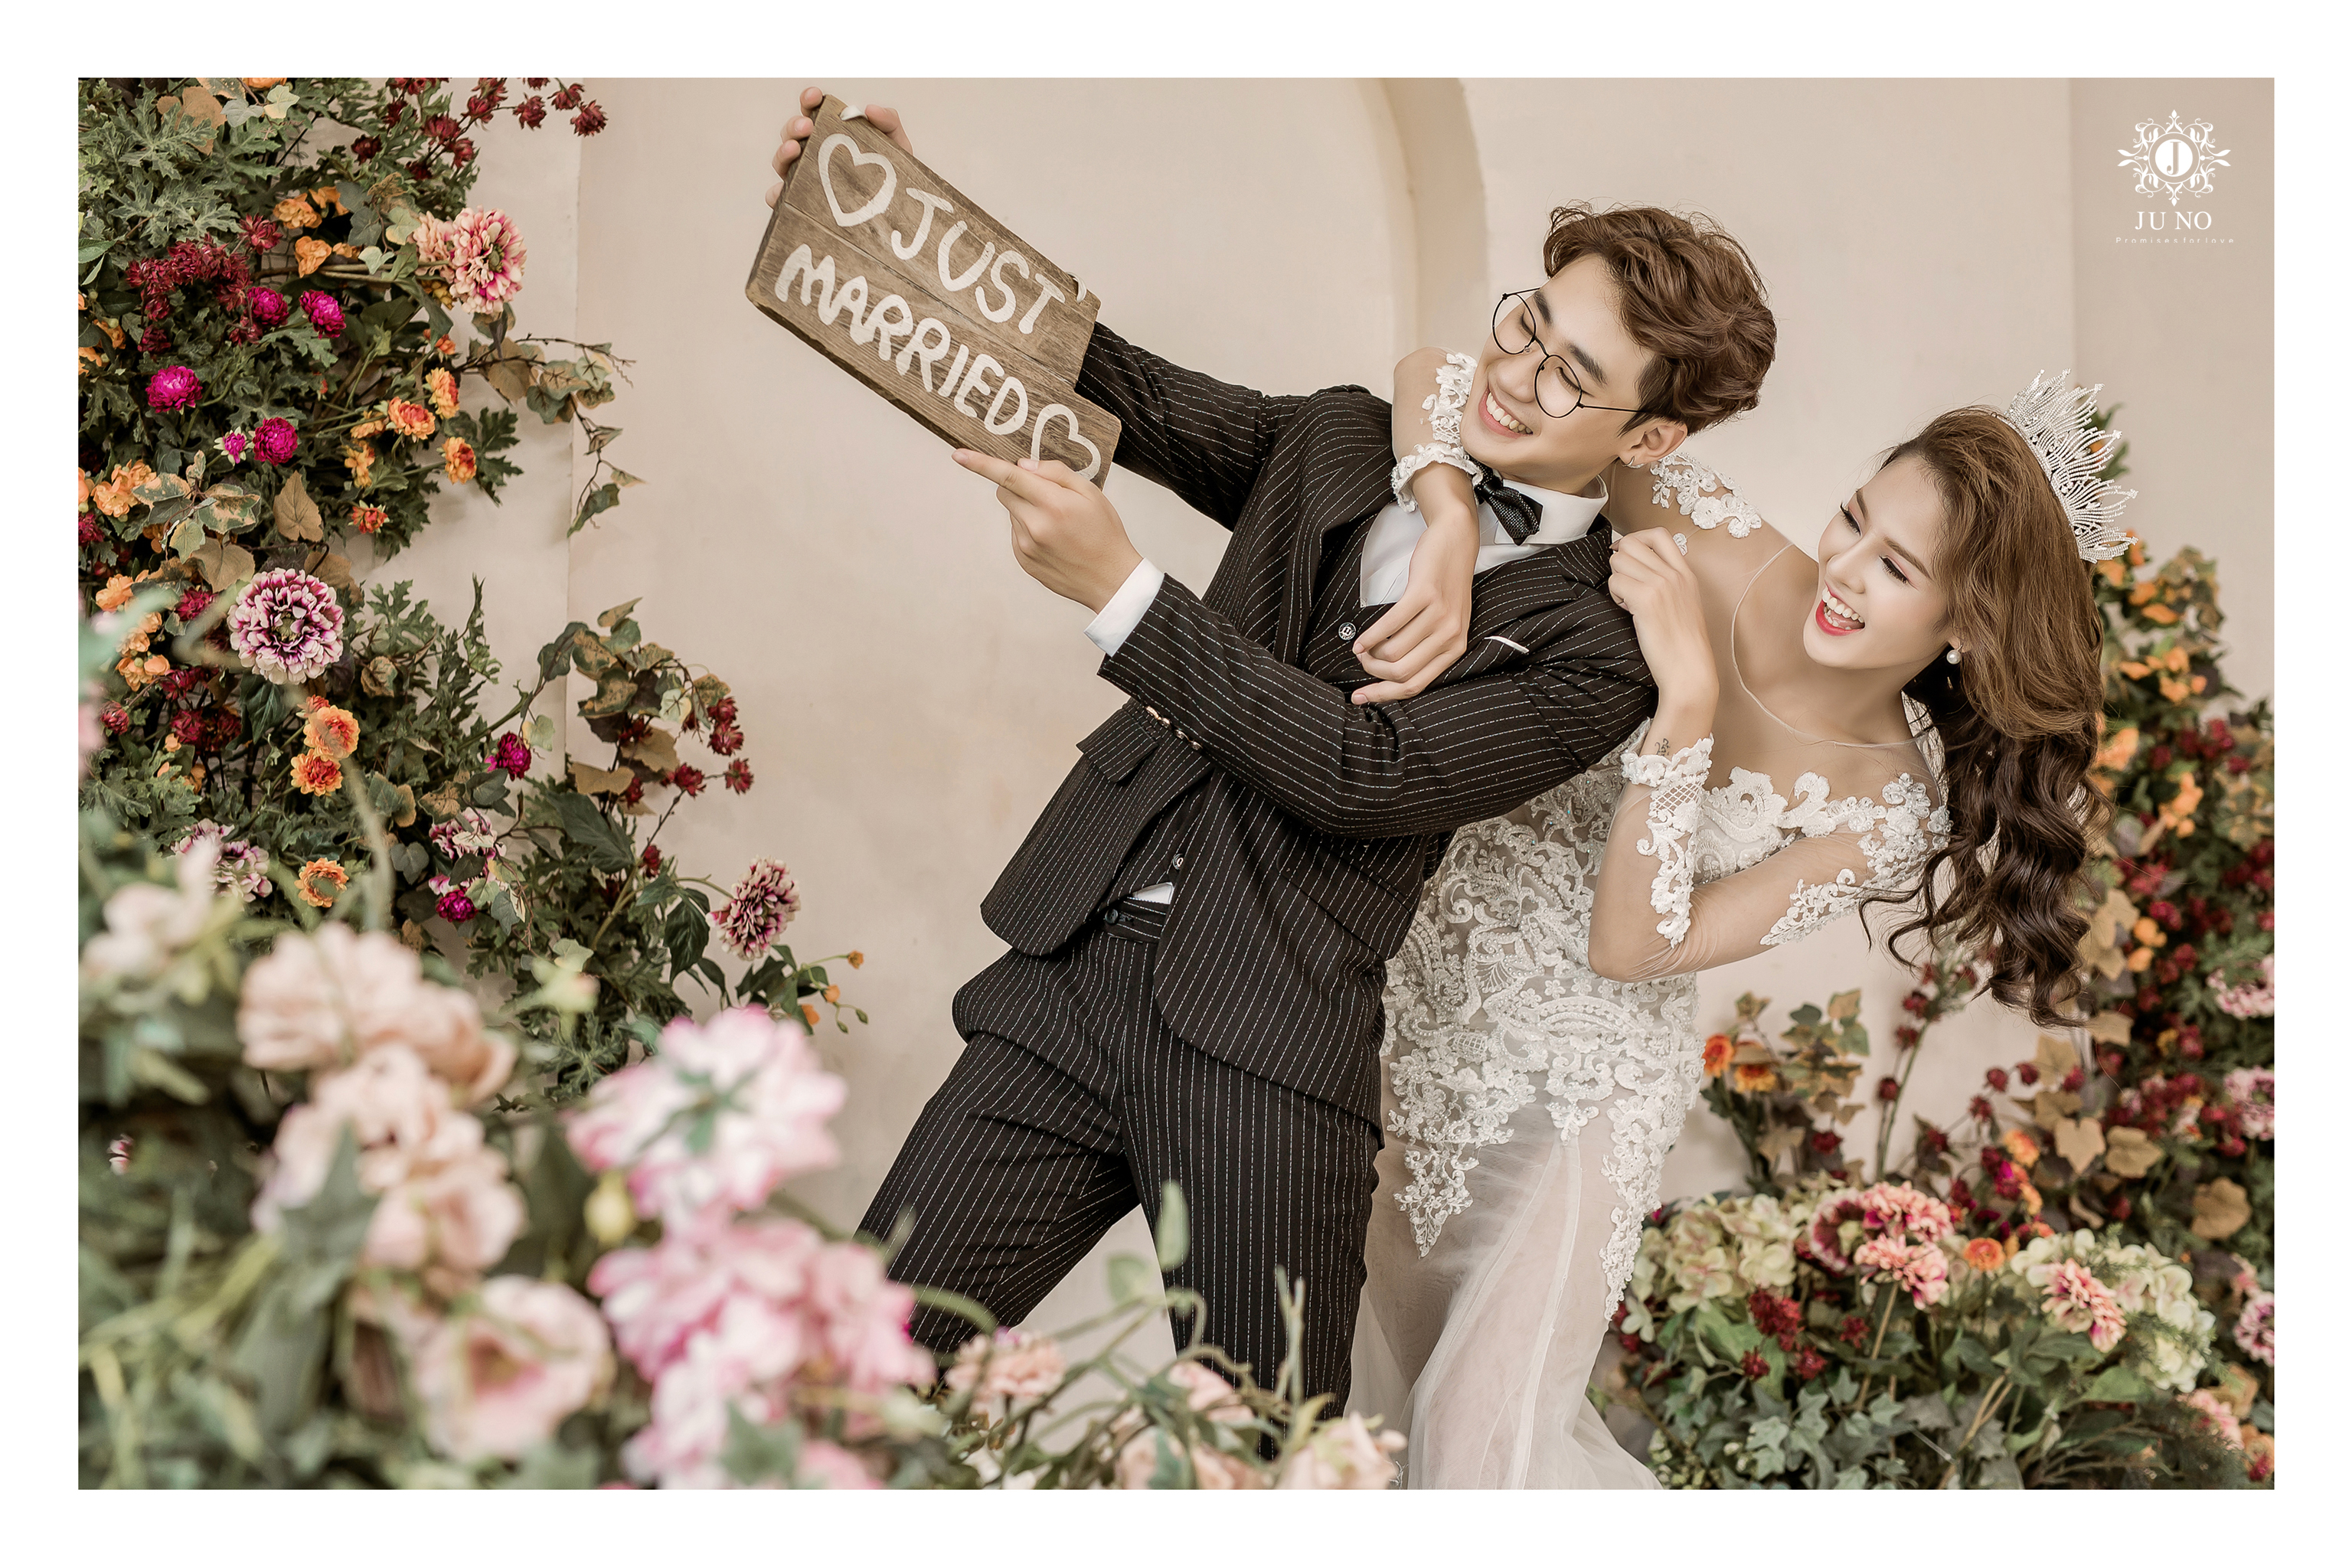 Bạn đang tìm kiếm một studio chụp ảnh cưới đẹp tại Hà Nội? Hãy đến với chúng tôi - một địa chỉ uy tín, chuyên nghiệp, sẽ giúp bạn và người ấy lưu giữ những khoảnh khắc tuyệt đẹp nhất trong ngày trọng đại. Hãy để chúng tôi tạo ra những bức ảnh cưới đẹp nhất cho bạn.